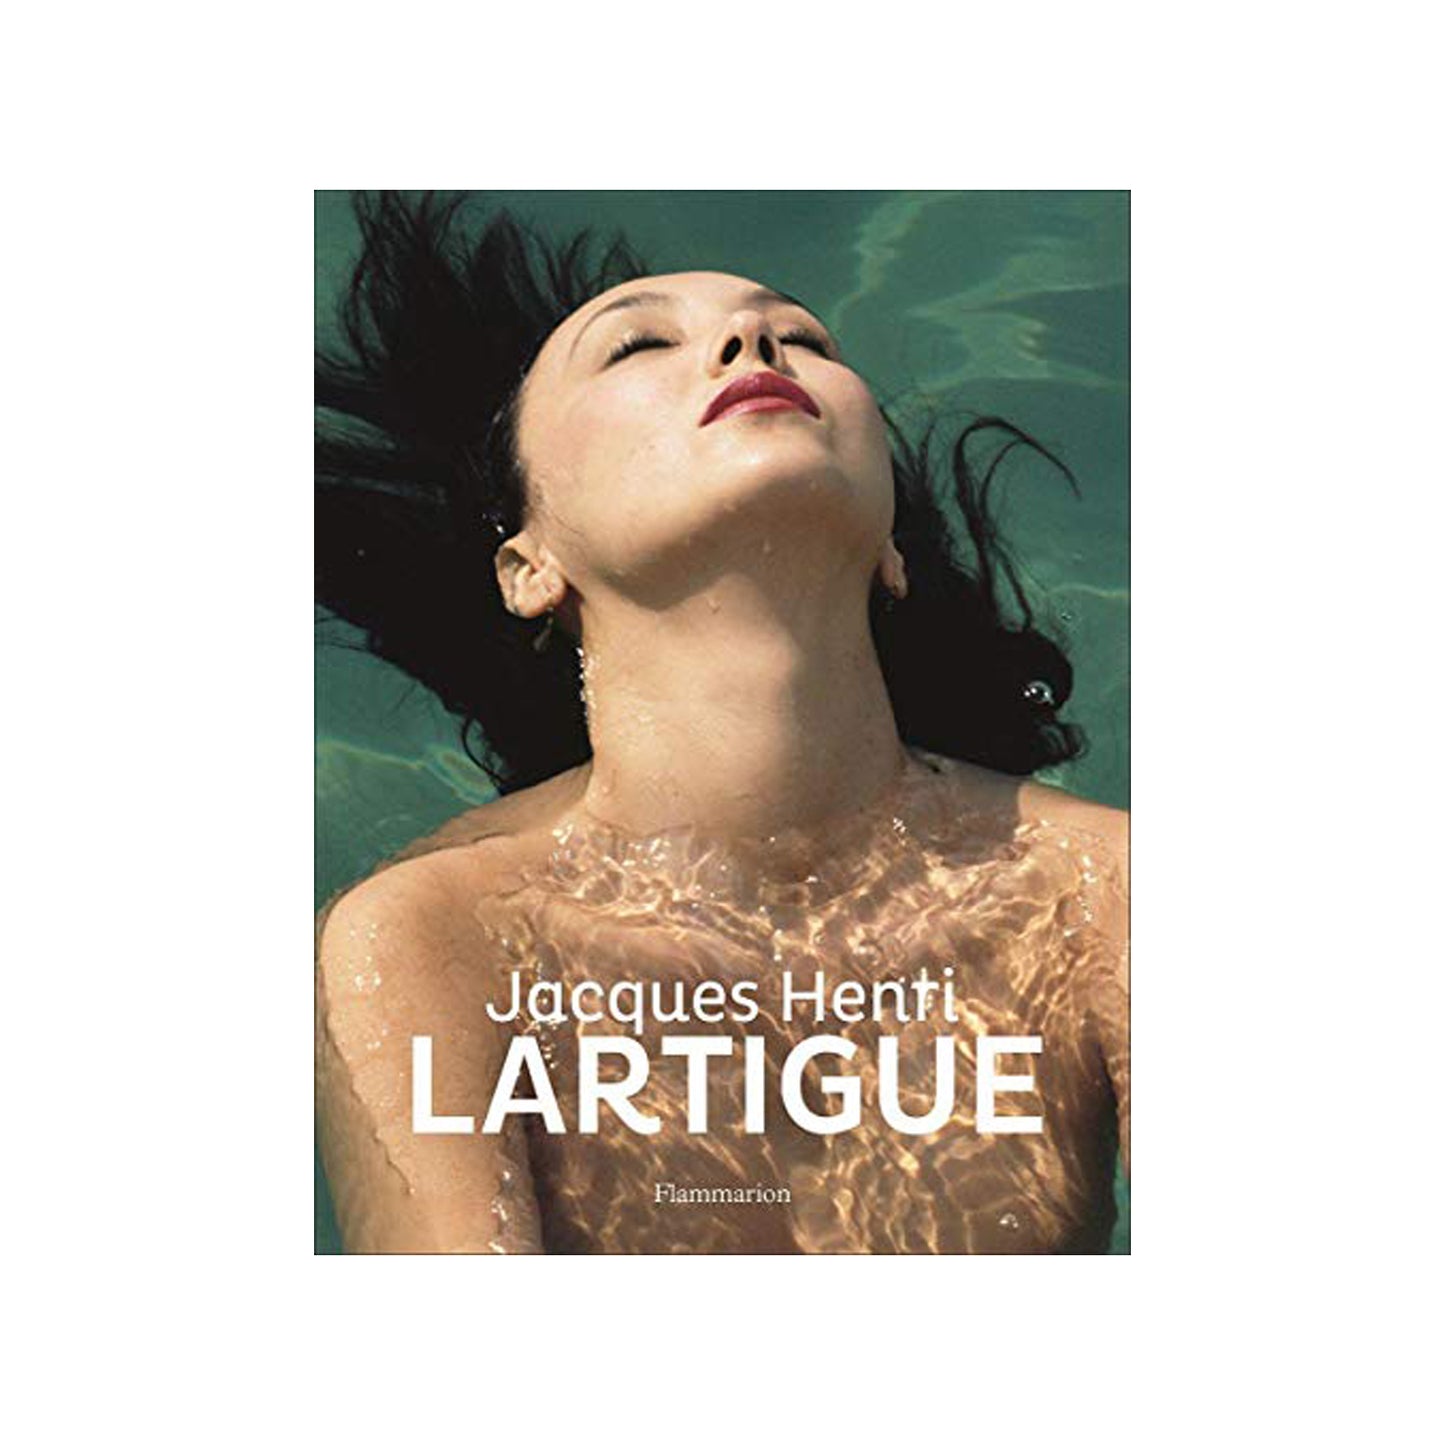 Jacques Henri Lartigue by Jacques Henri Lartigue